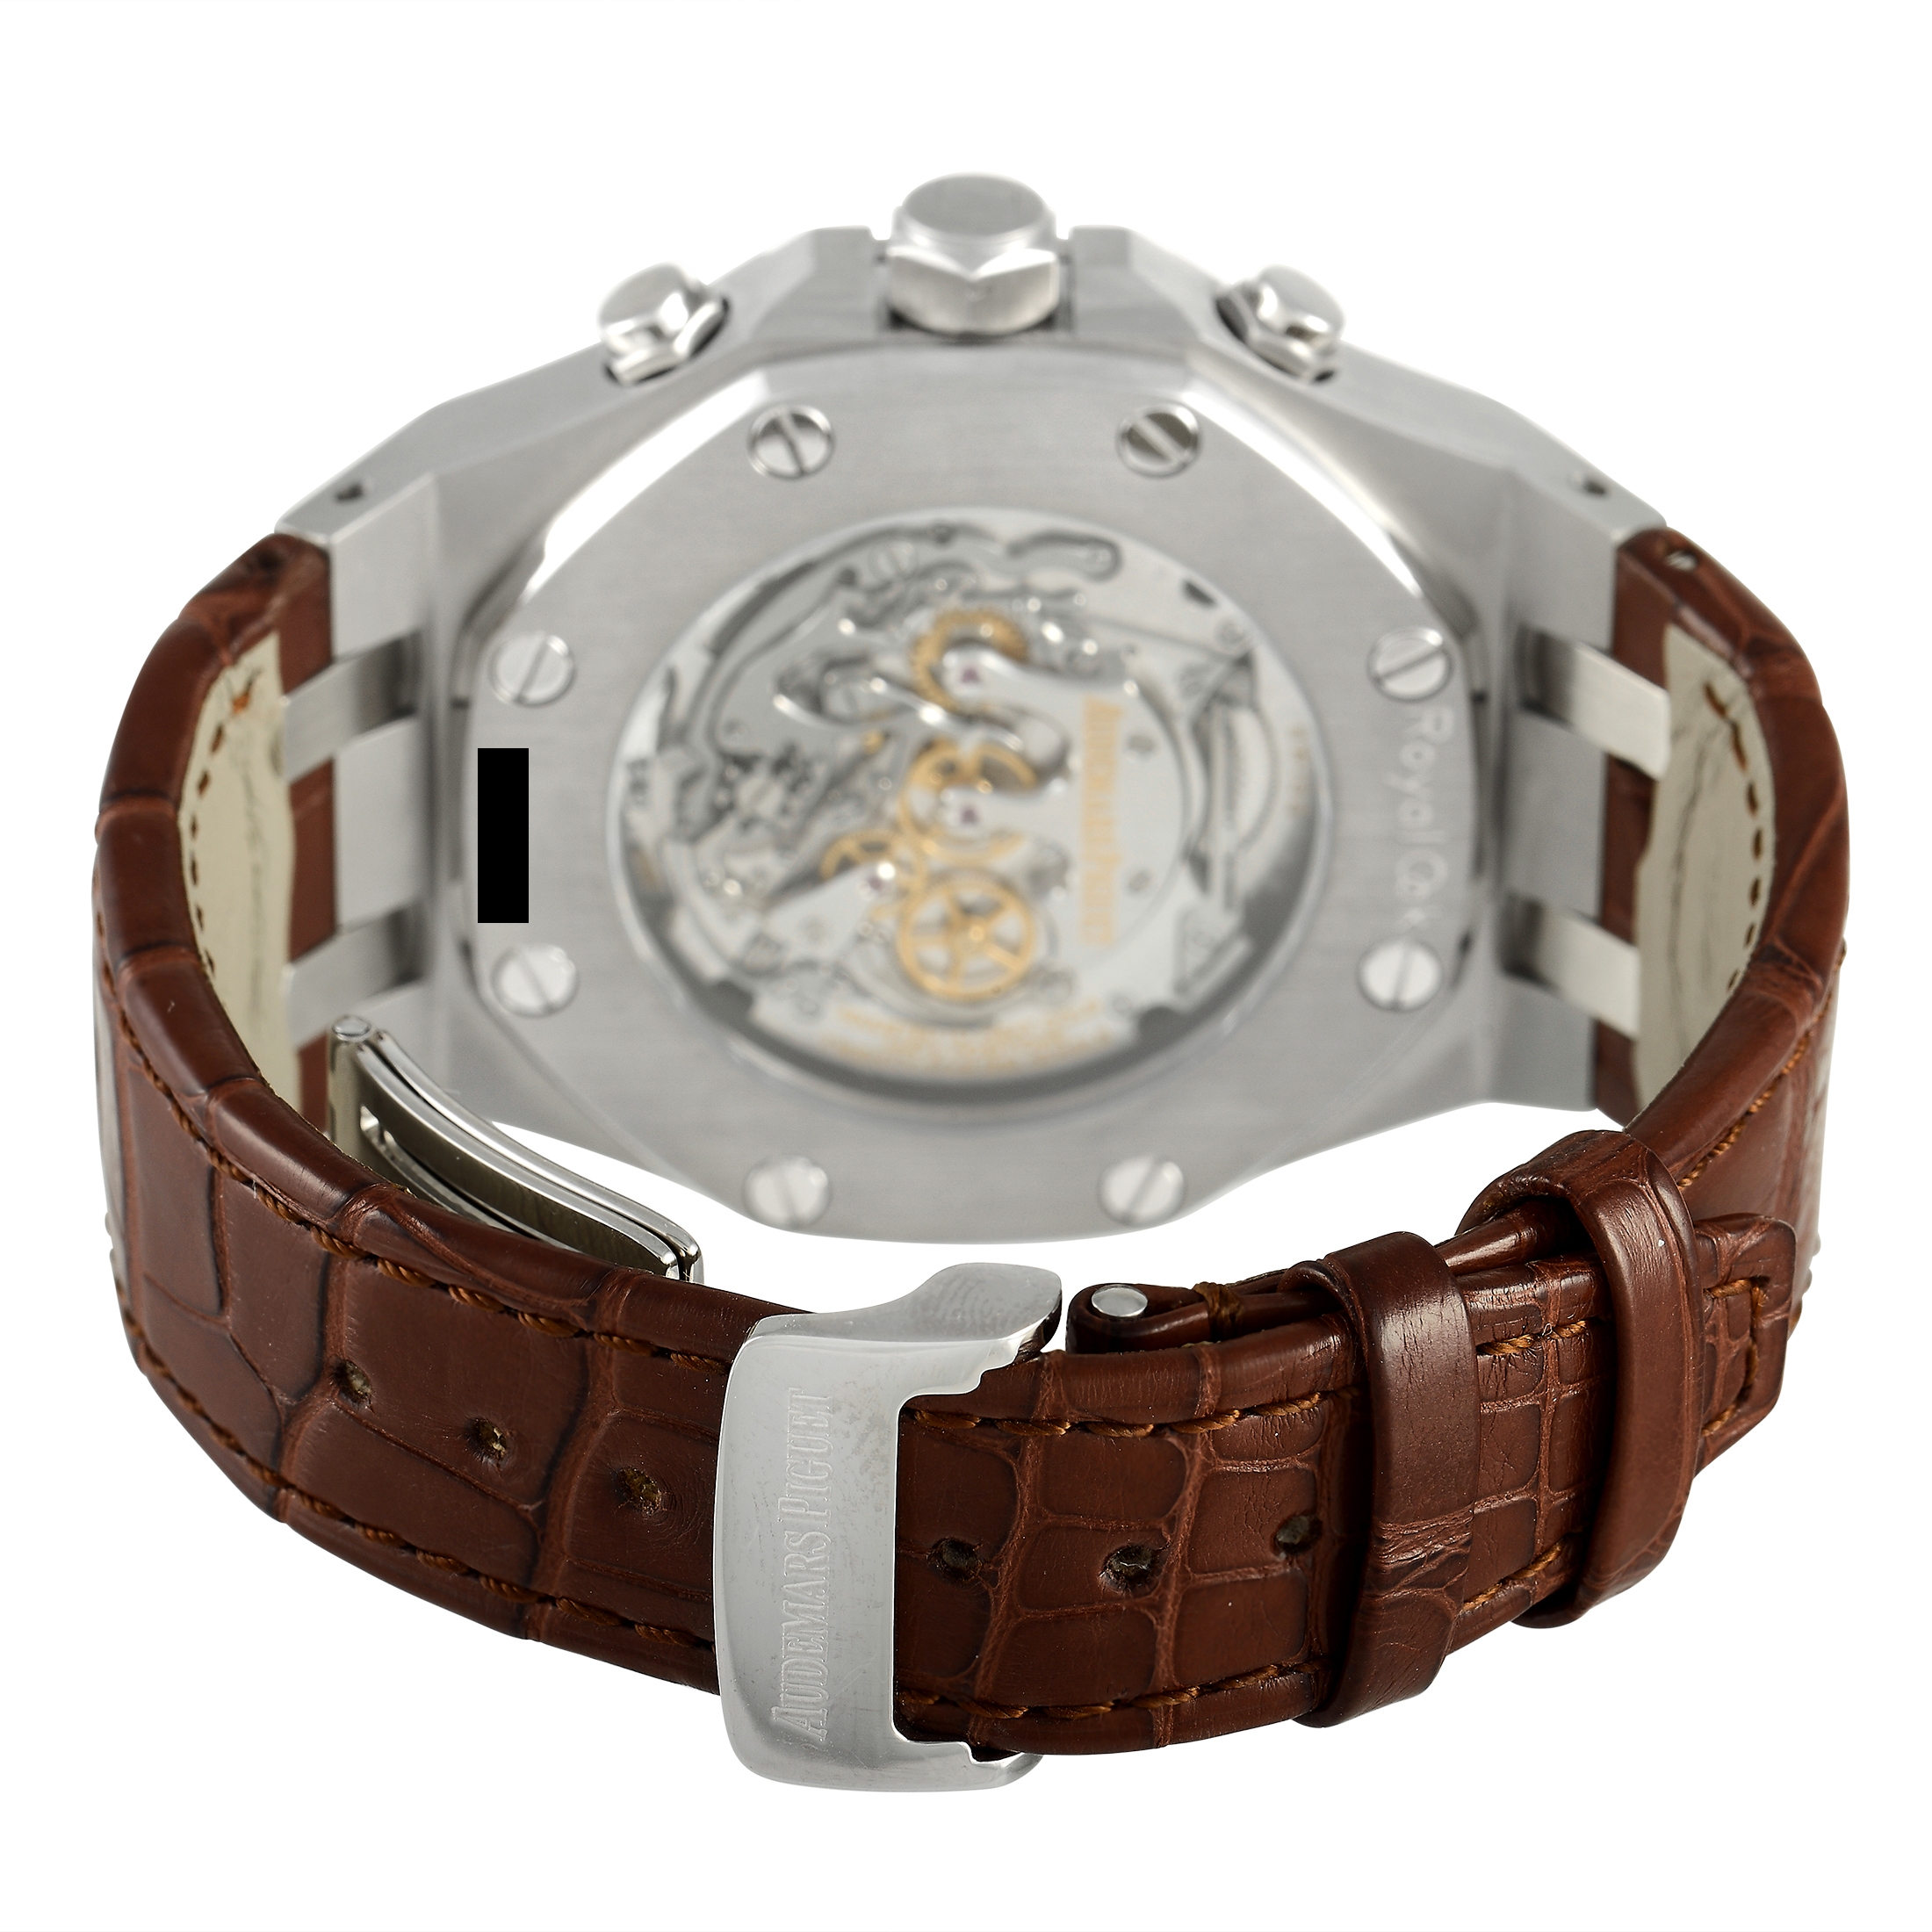 Audemars Piguet Royal Oak Tourbillon Chronograph Watch 25977ST.OO.D082CR.01